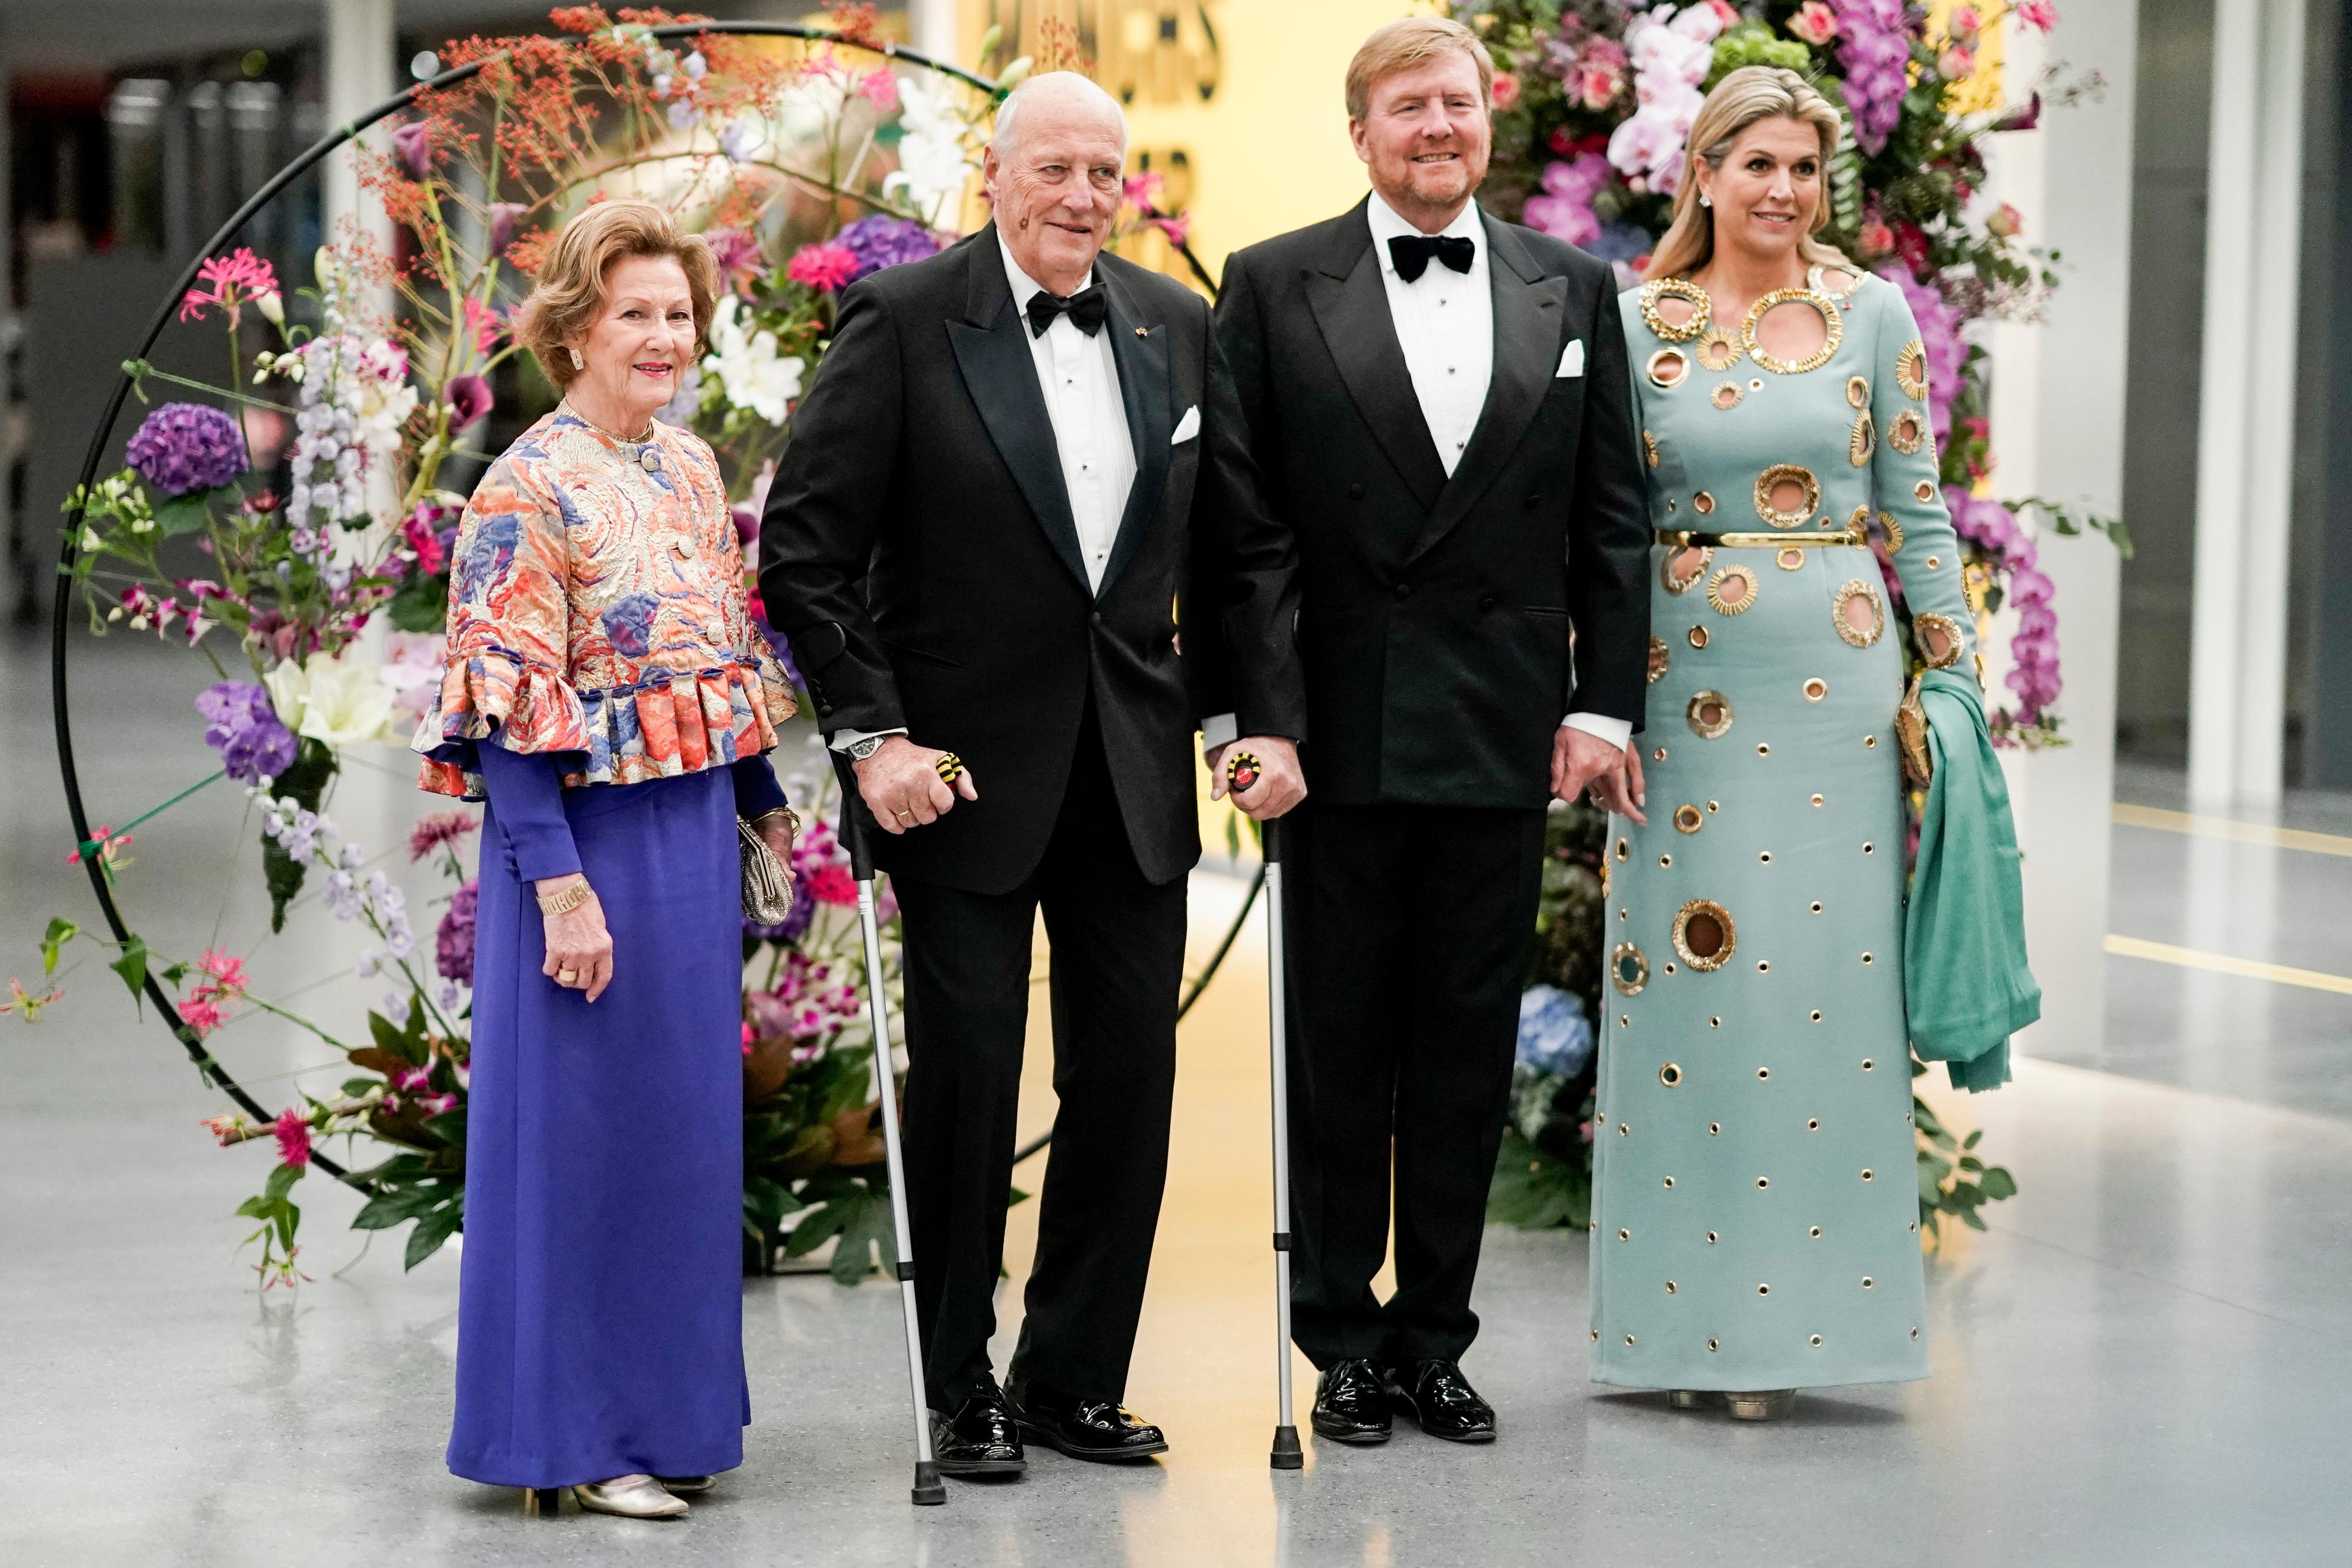 IMPONERER: Mens kongene var kledd i smoking, hadde dronningene hentet frem lekre kjoler. Dronning Sonja var i kjent stil lekkert antrukket i lilla kjole med fargerik og kunstnerisk jakke.